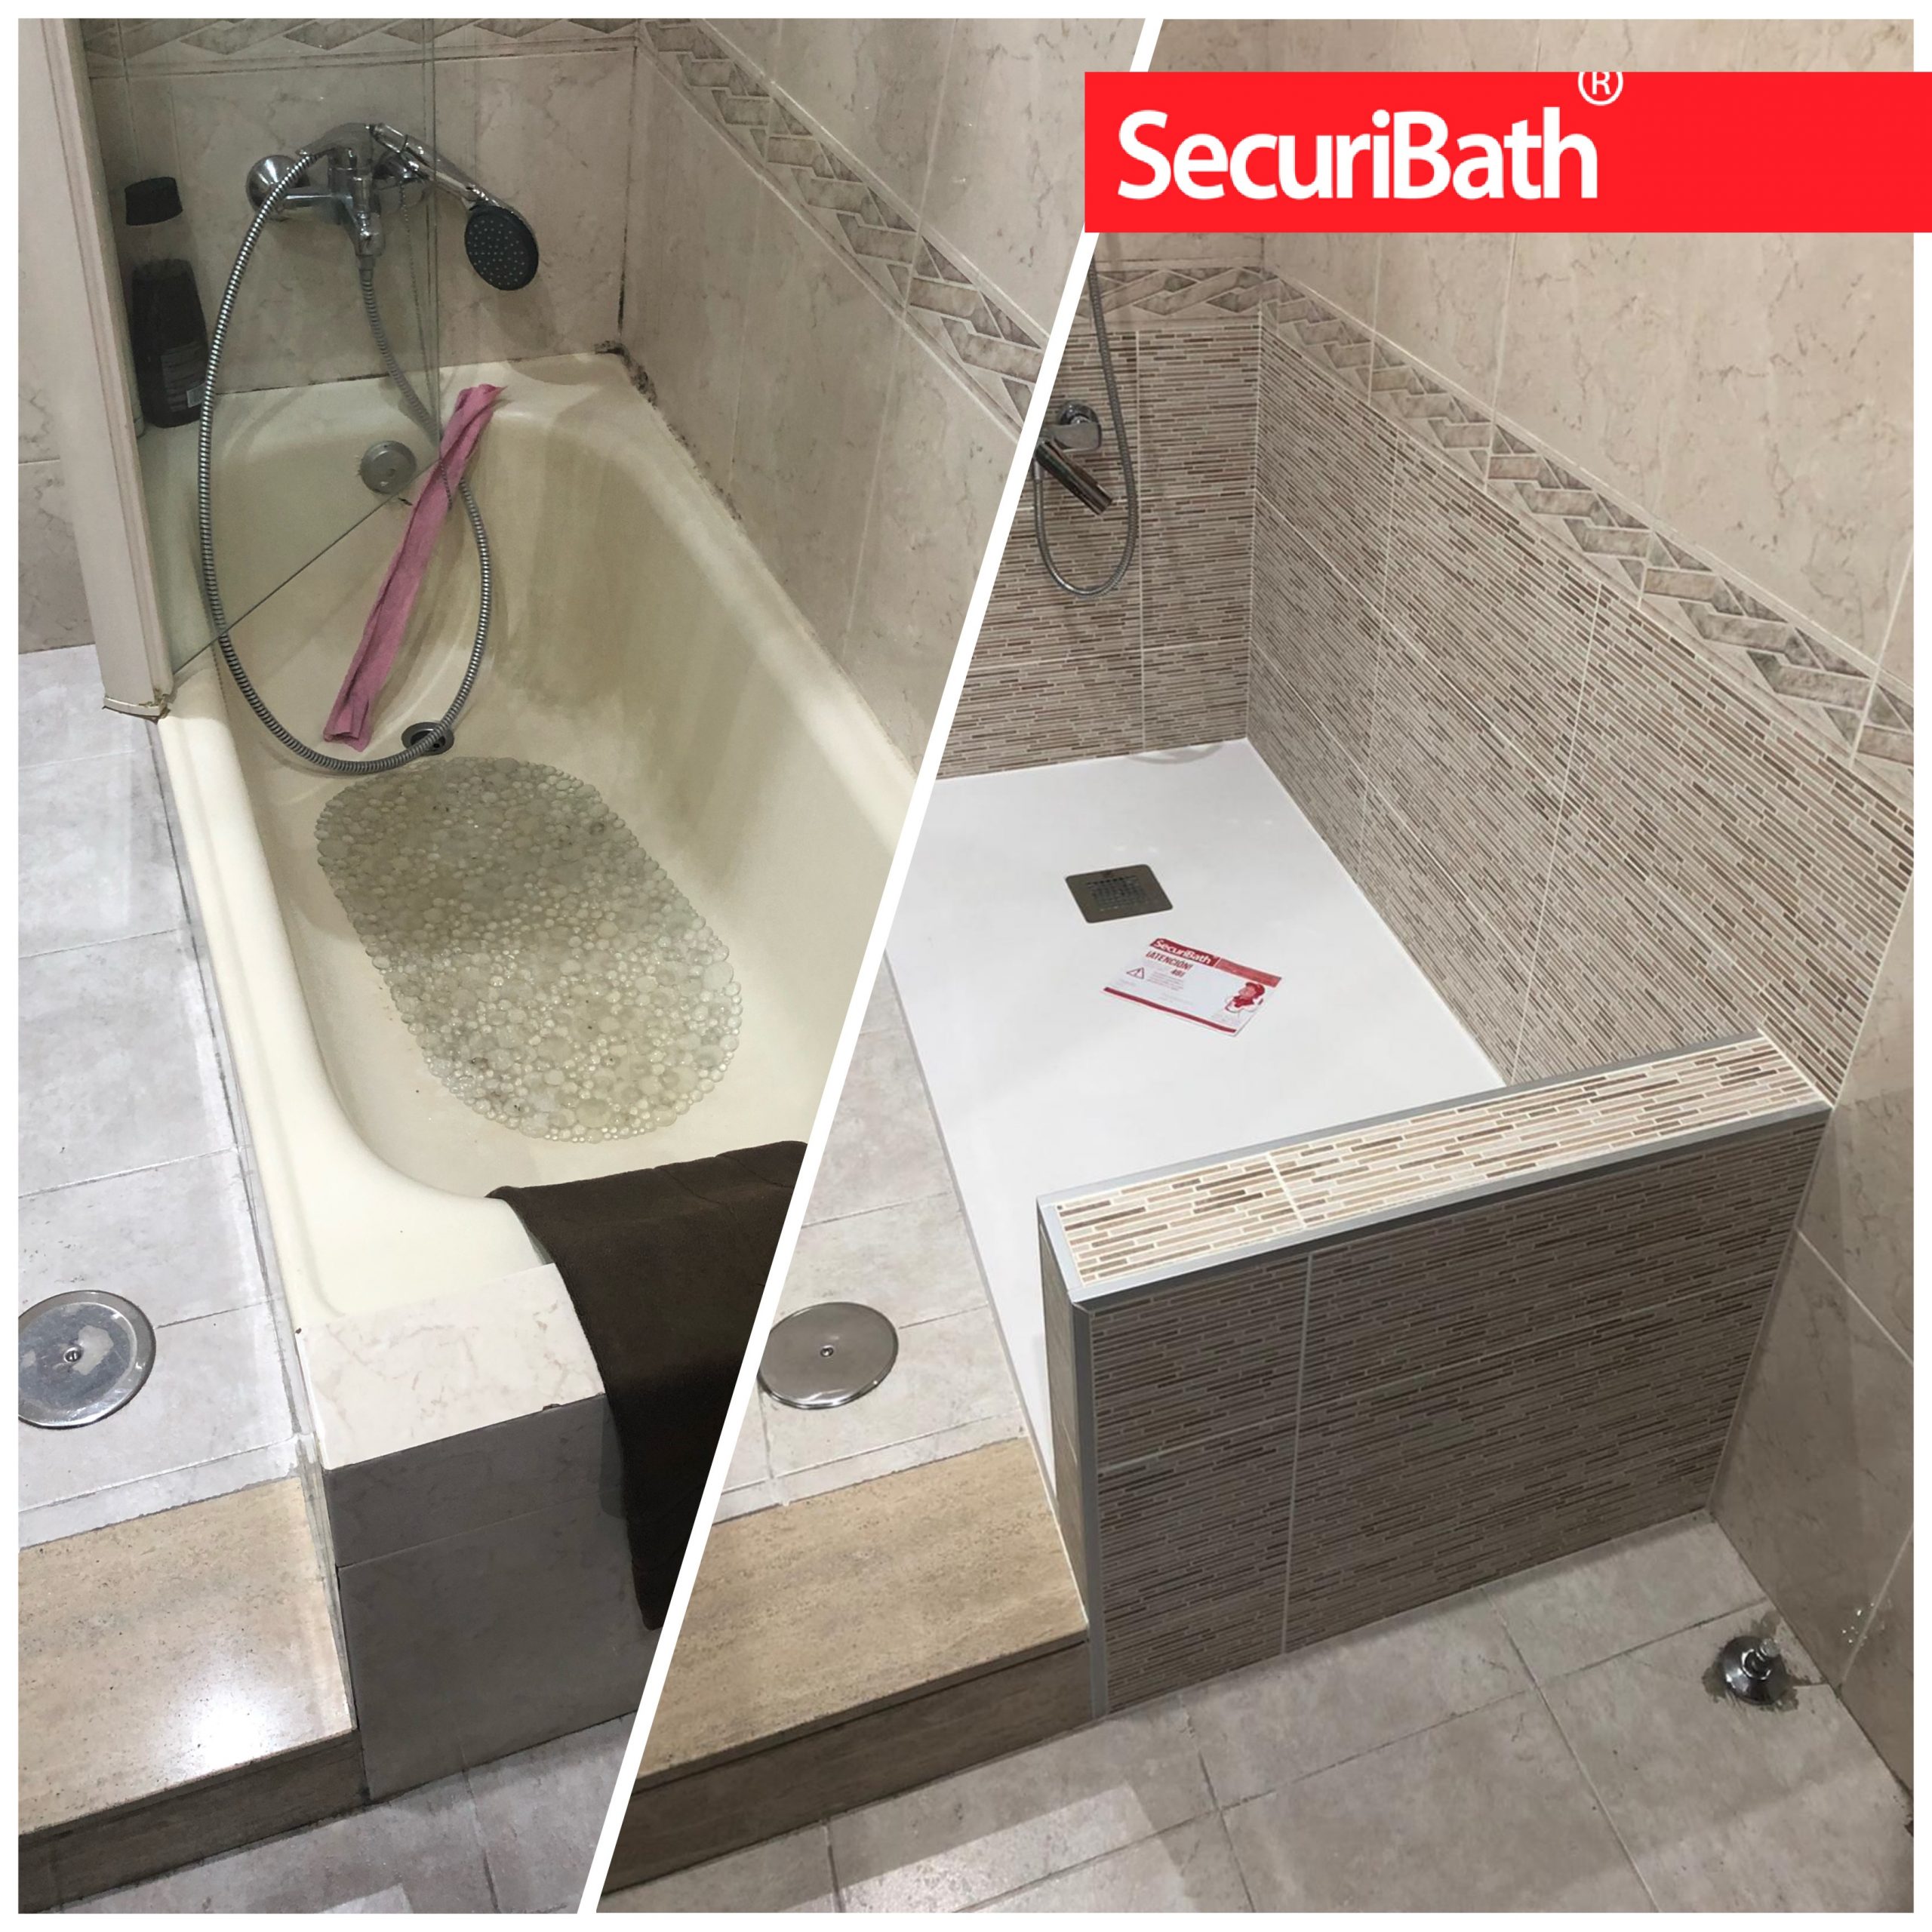 Antes y Después; un cuarto de baño que aprovecha el cambio de la bañera por  ducha